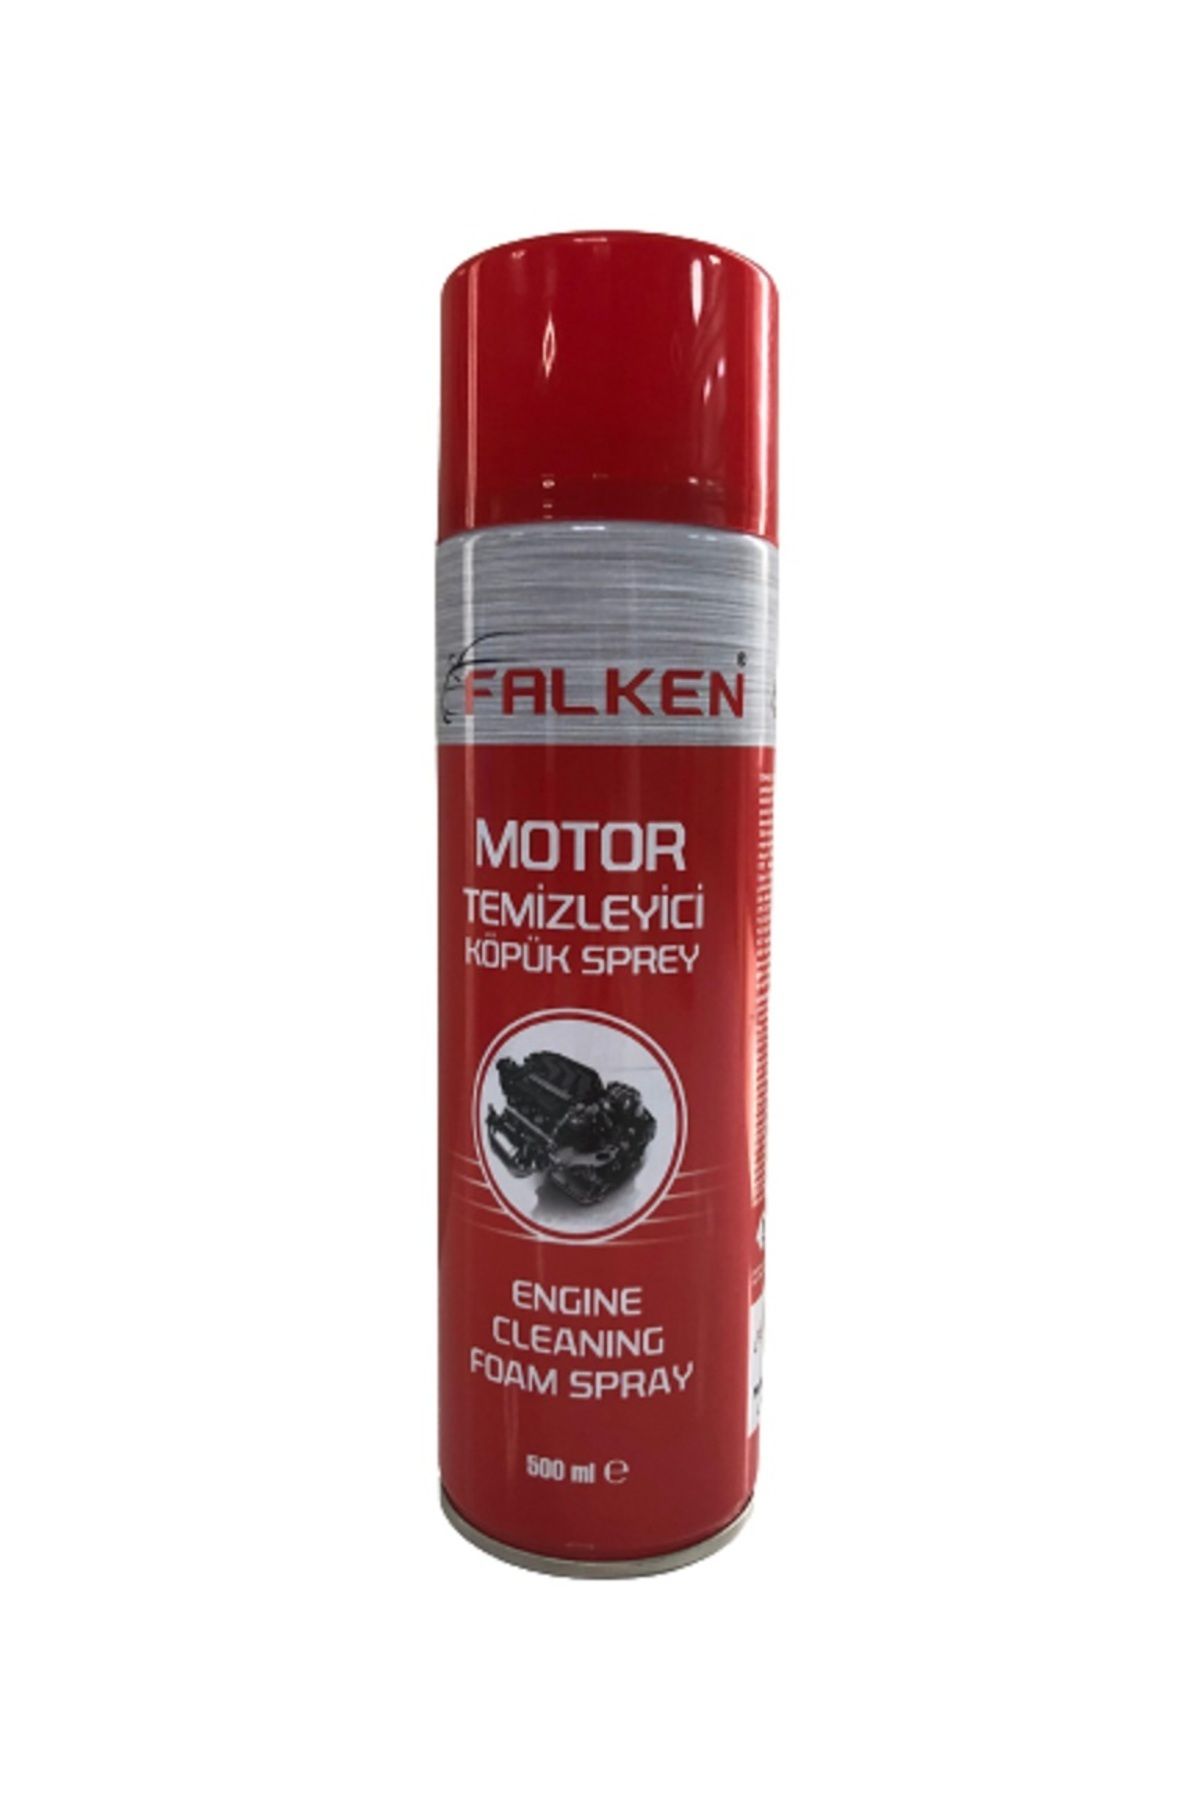 Falken Motor Temizleyici Köpük Sprey 500ml